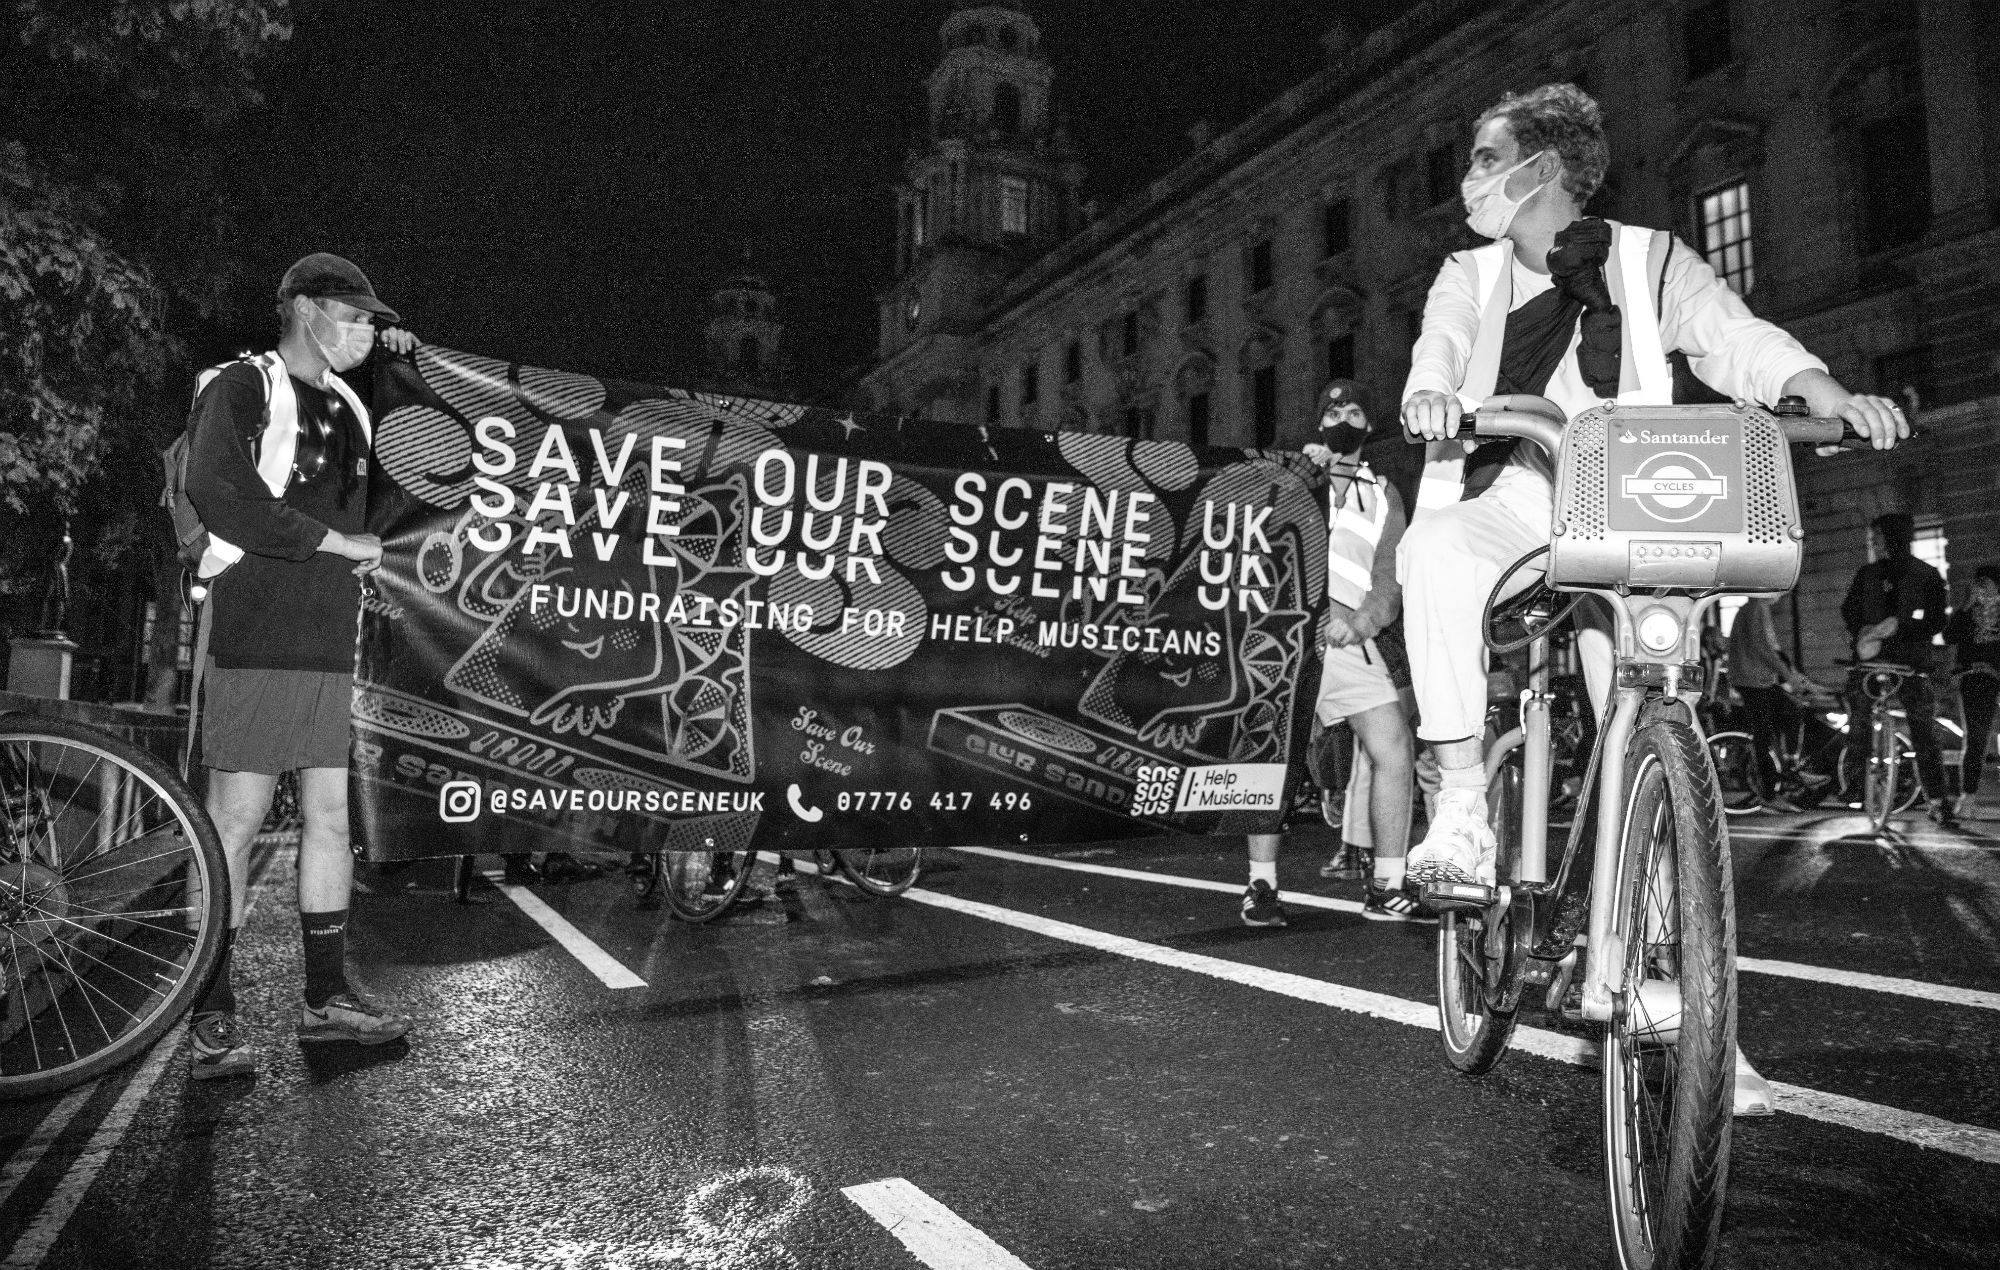 Save Our Scene anuncia nuevas protestas en Londres y Bristol para apoyar a los músicos que luchan